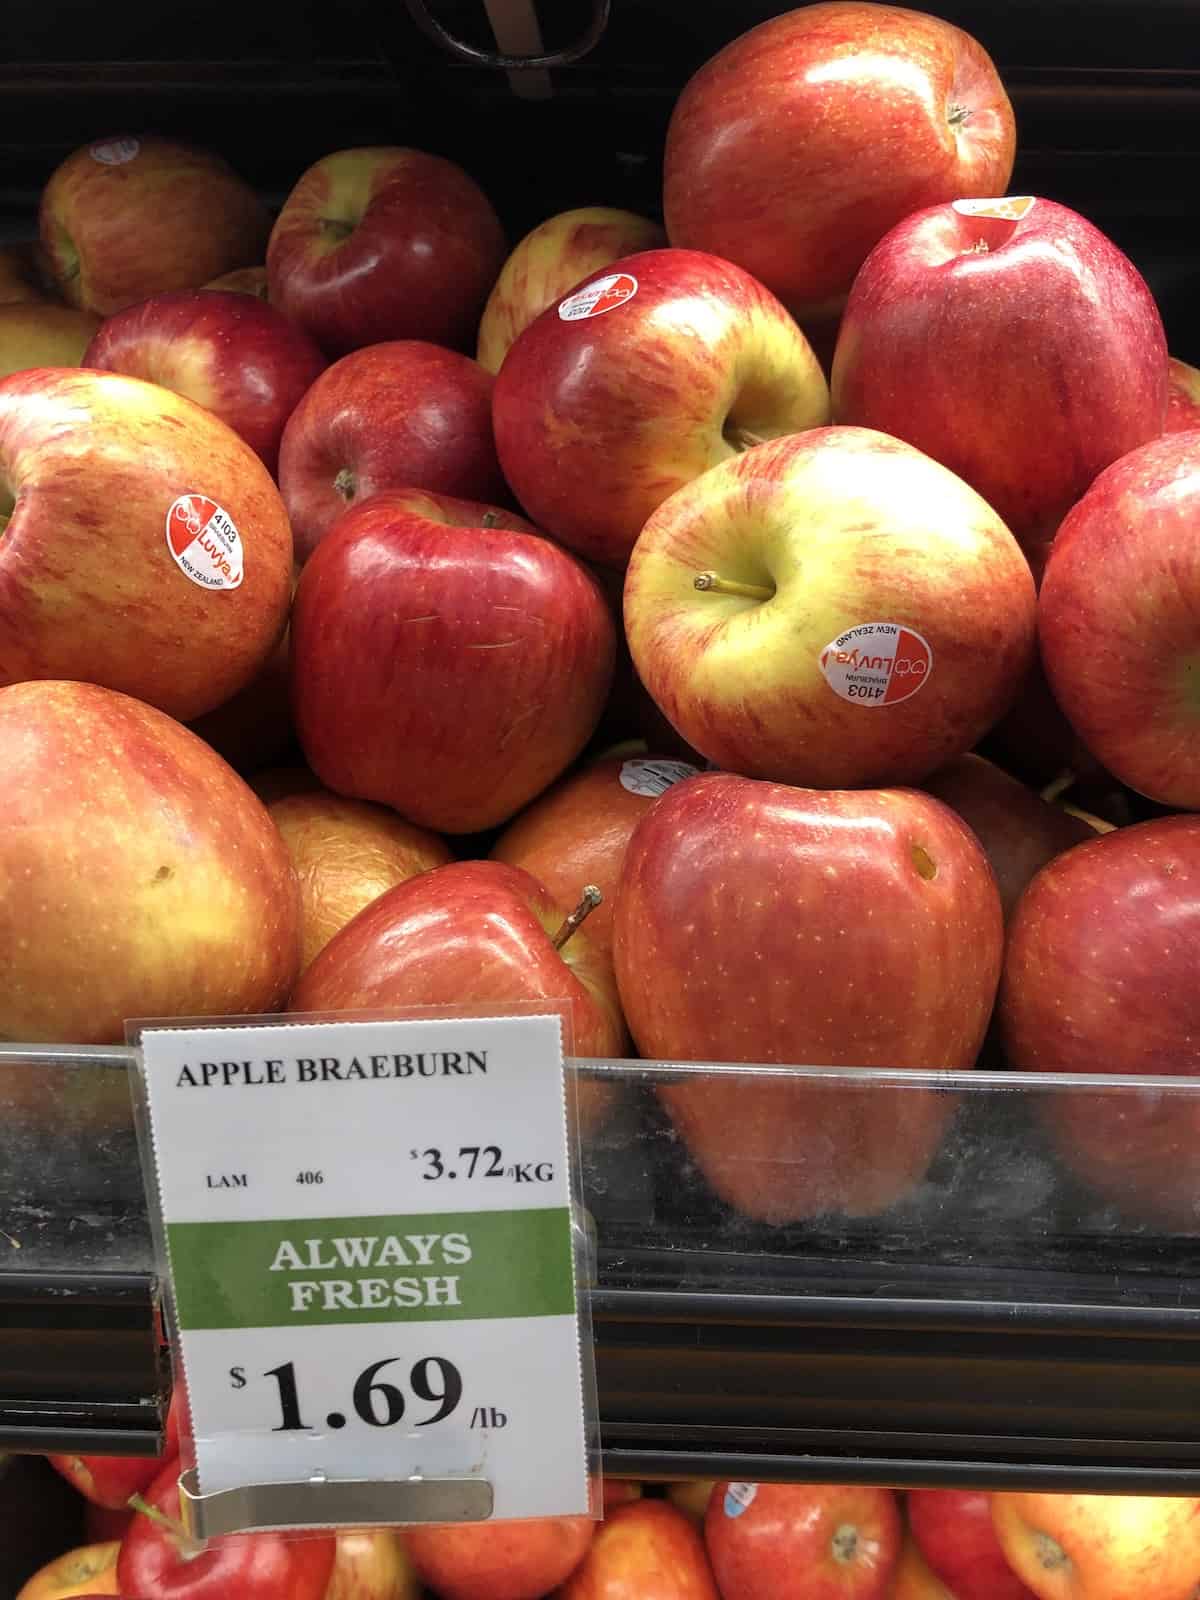 Grocery store self of red braeburn apples